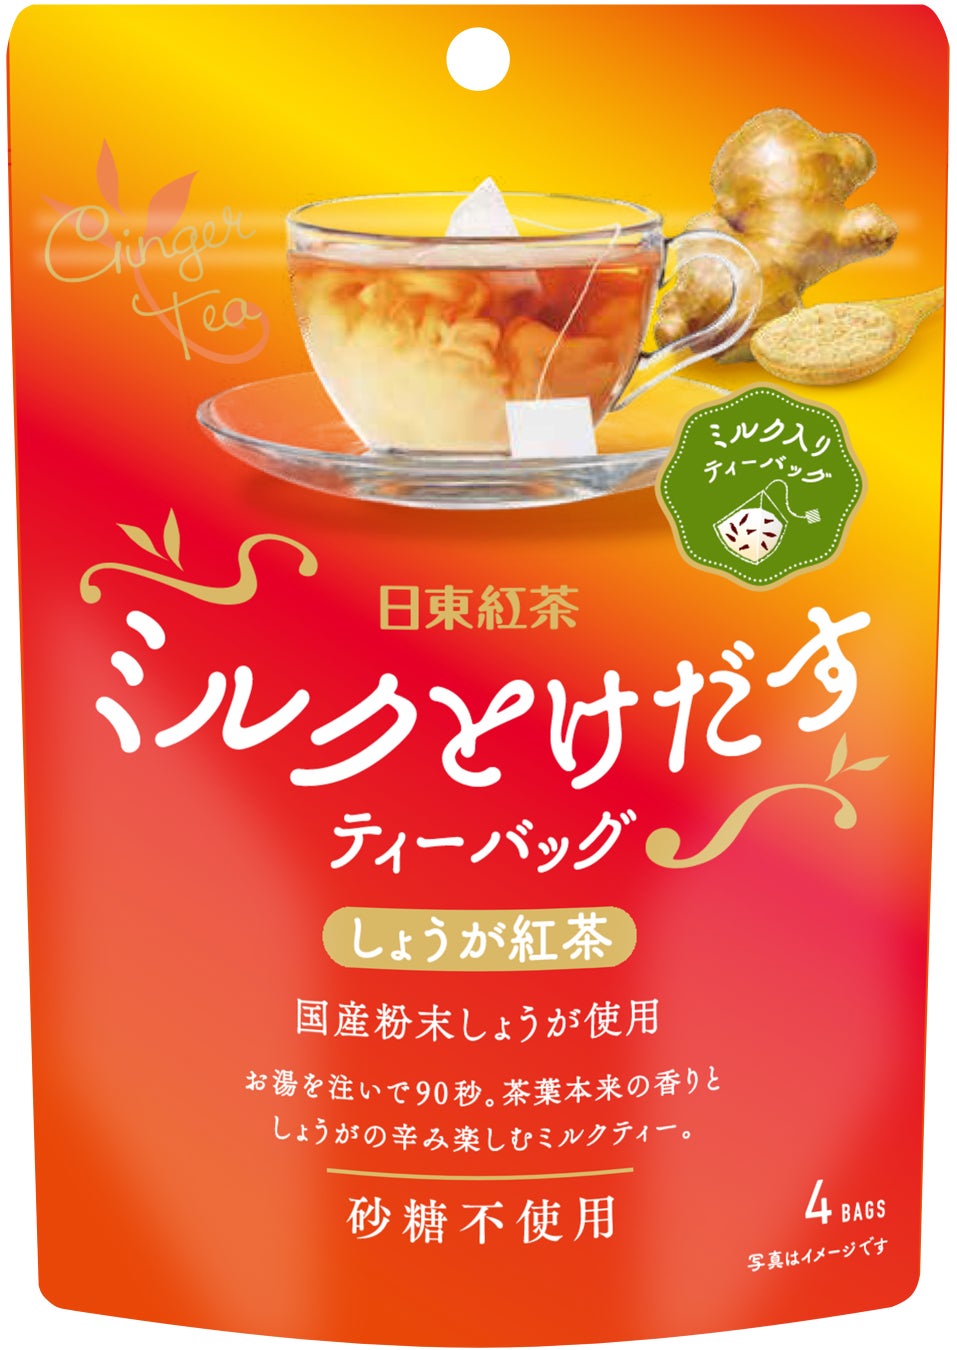 「日東紅茶」×「A3!」コラボレーション商品公式オンラインショップ「日東紅茶TeaMart」にて限定販売決定 10月28日（金）より予約受付開始